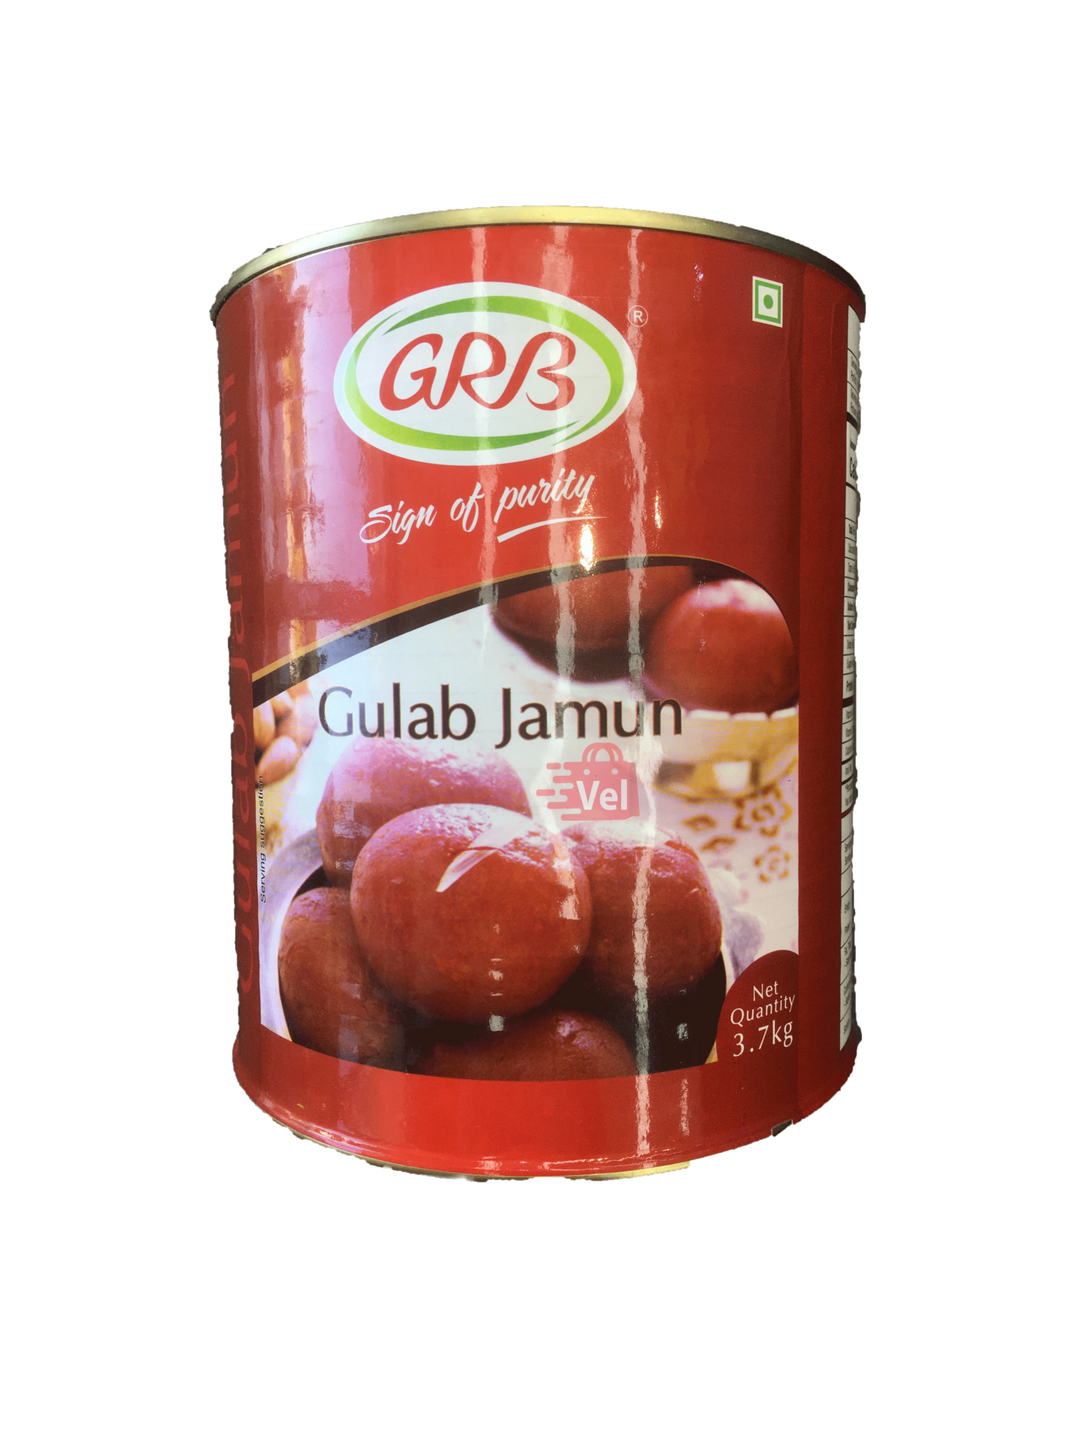 GRB Gulab Jamun 3.7kg